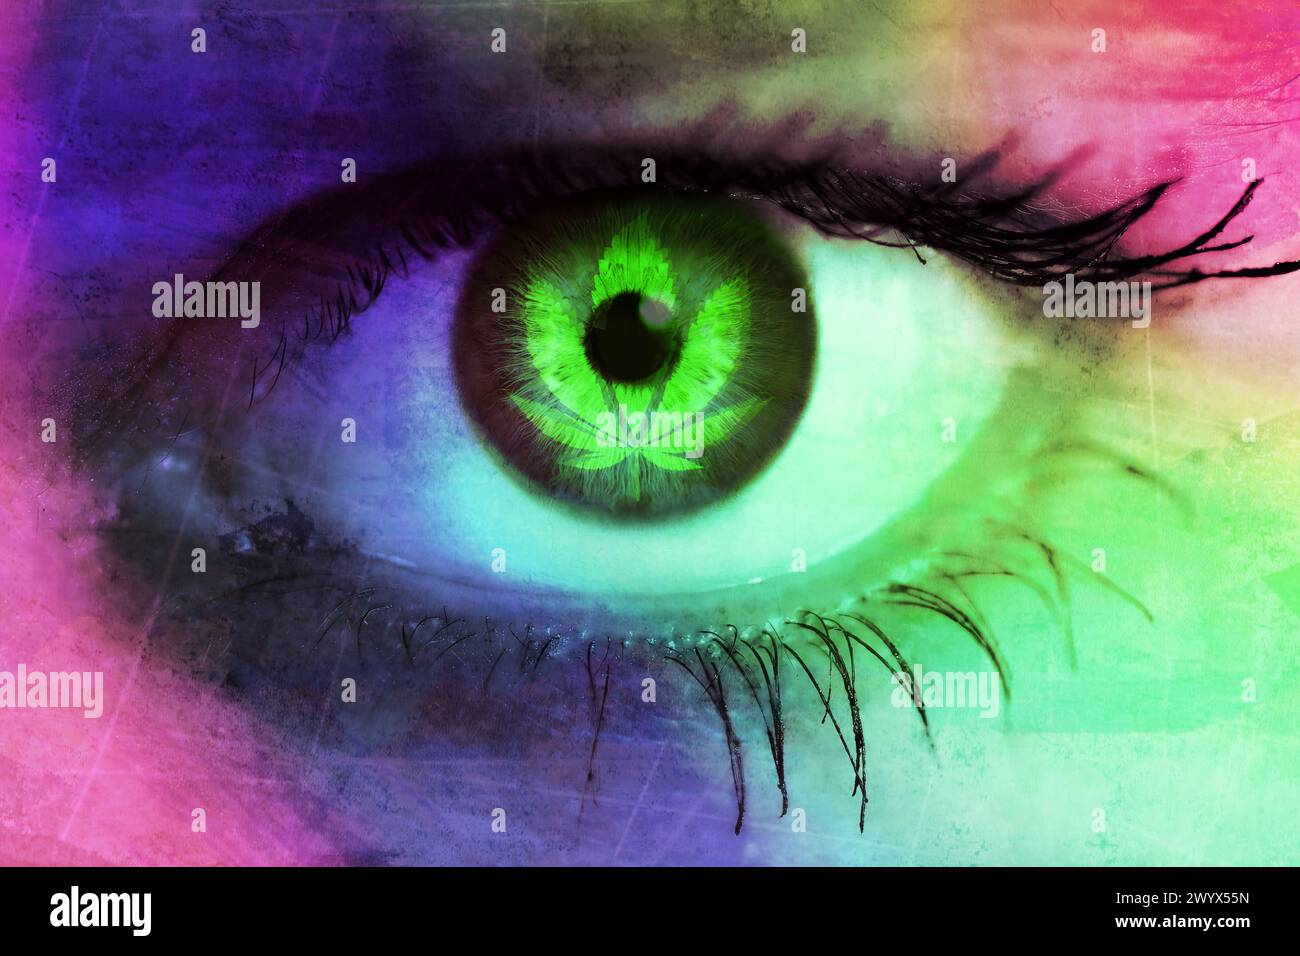 Foglia di cannabis nell'occhio di Una donna, legalizzazione della cannabis e pericoli di abuso di cannabis, fotomontaggio Foto Stock